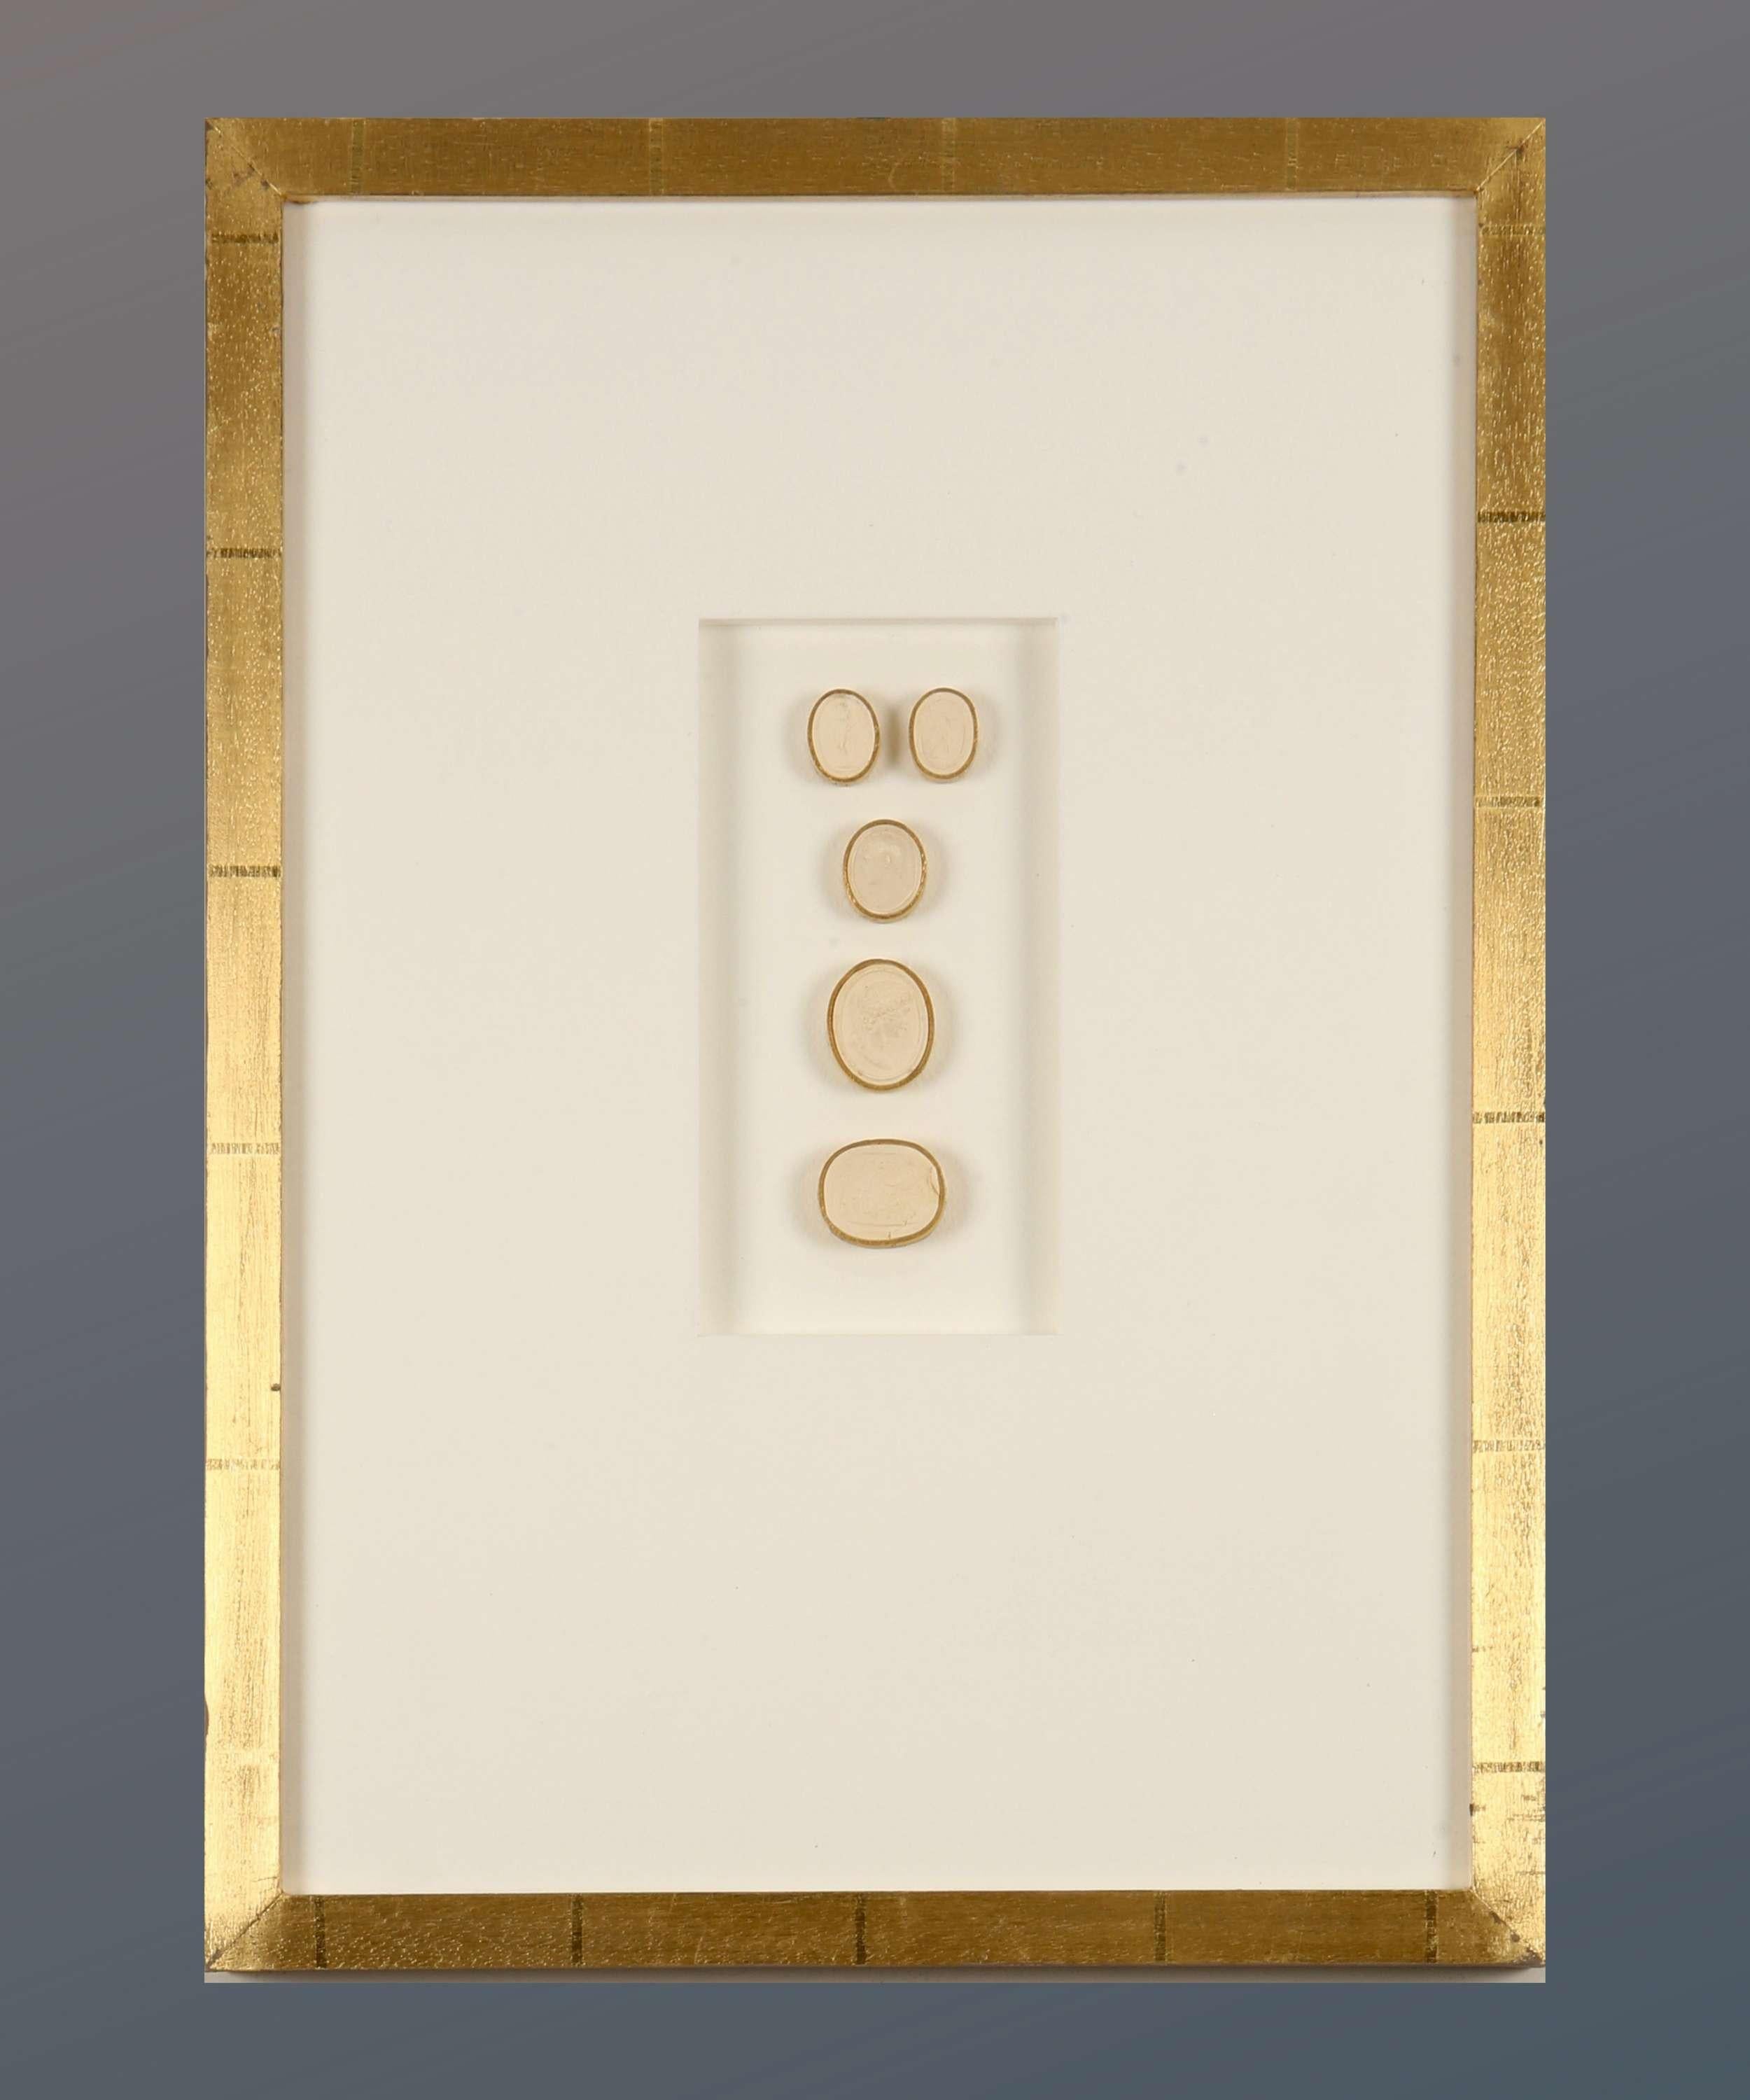 Paoletti Impronte, ‘Mussei Diversi’ Framed Plaster Cameo Seals, Rome c1800 - Art by Bartolomeo Paoletti and Pietro Paoletti